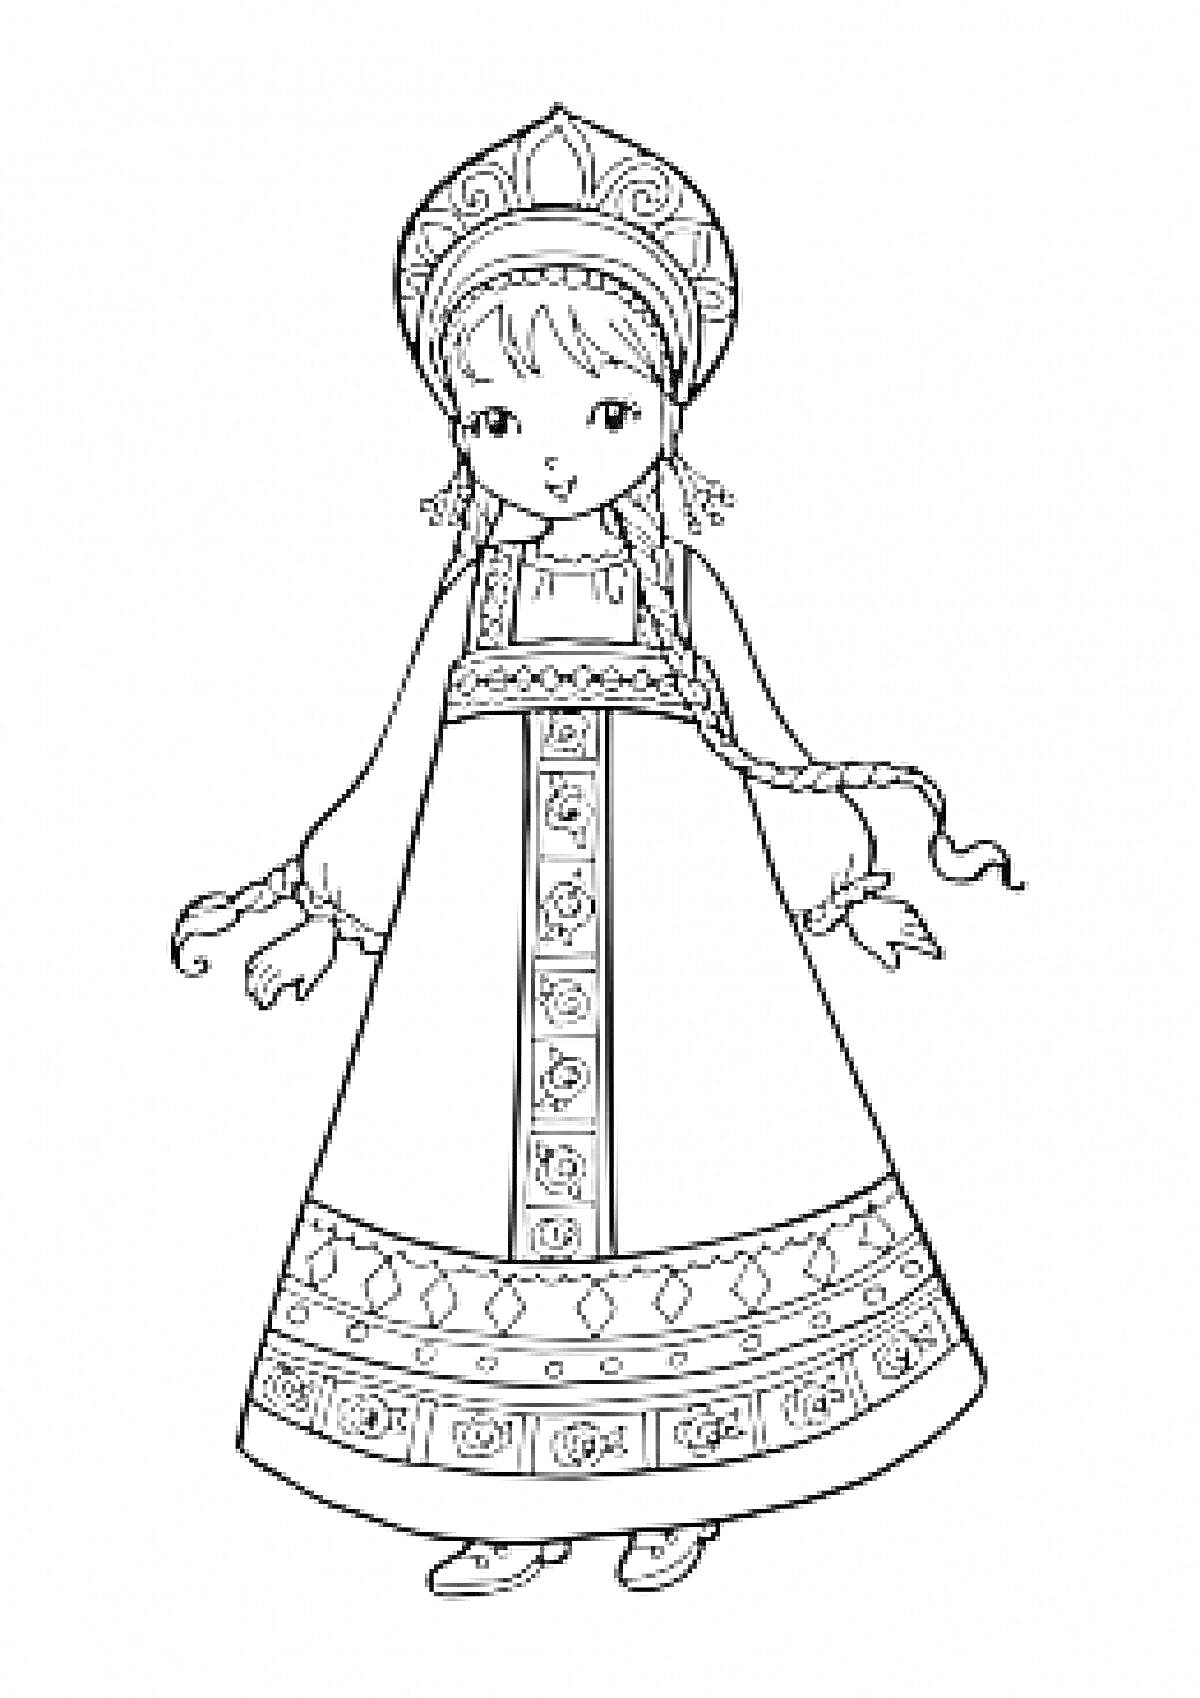 Девочка в традиционном русском костюме с кокошником, узорный сарафан, косы